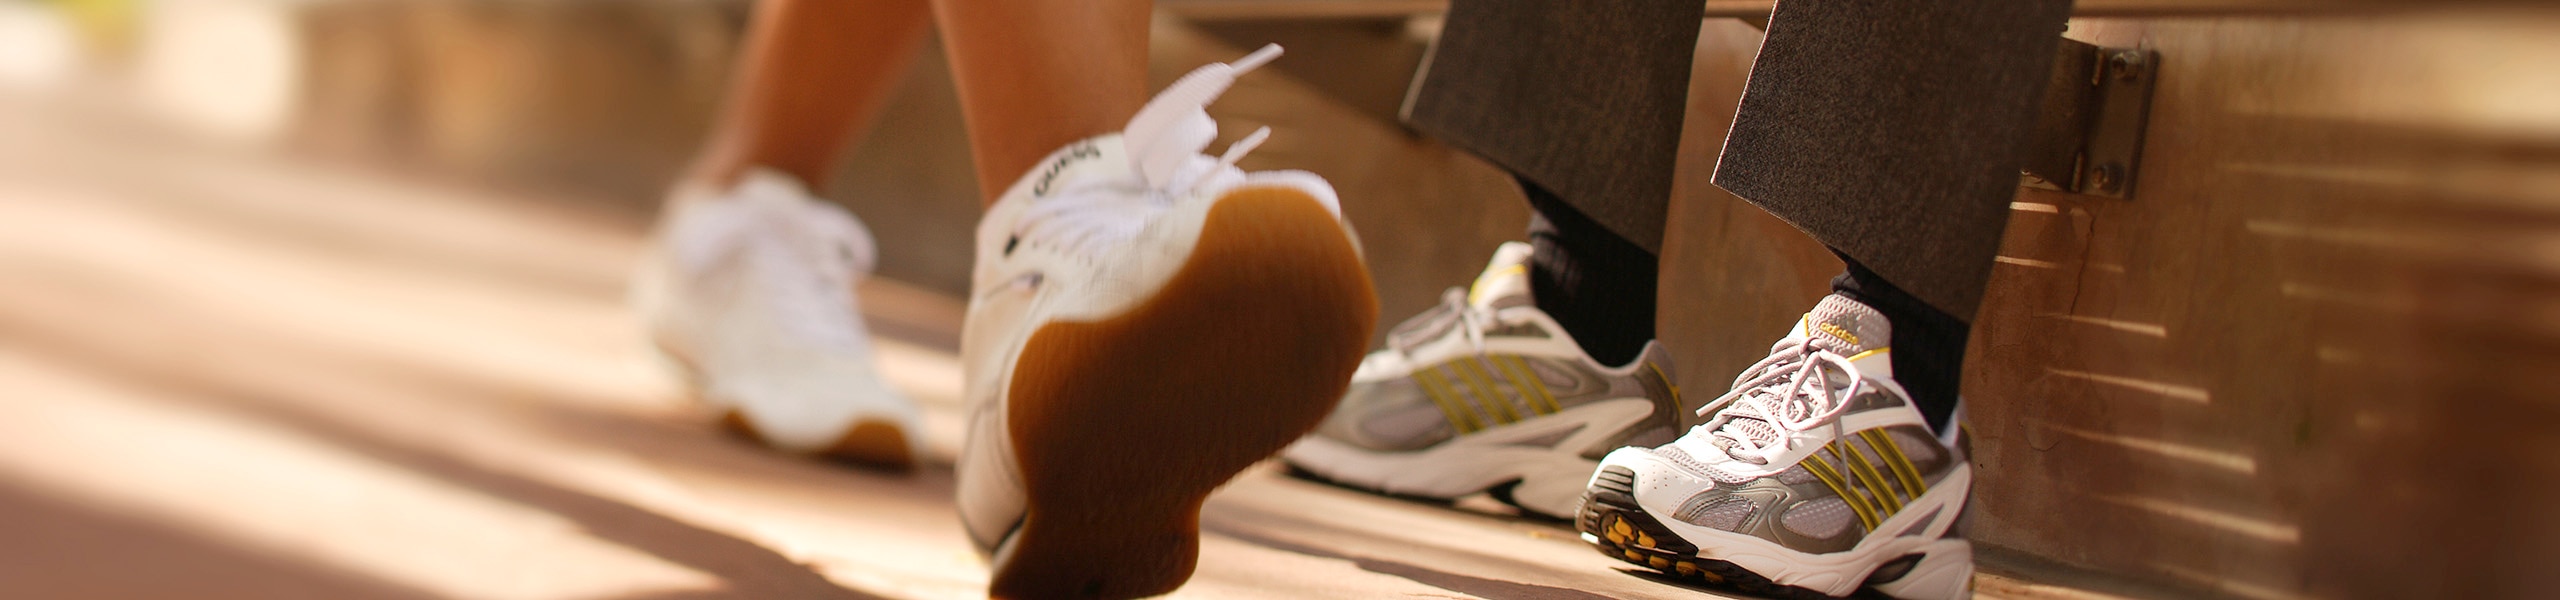 Persona con calzado deportivo que camina frente a una persona sentada